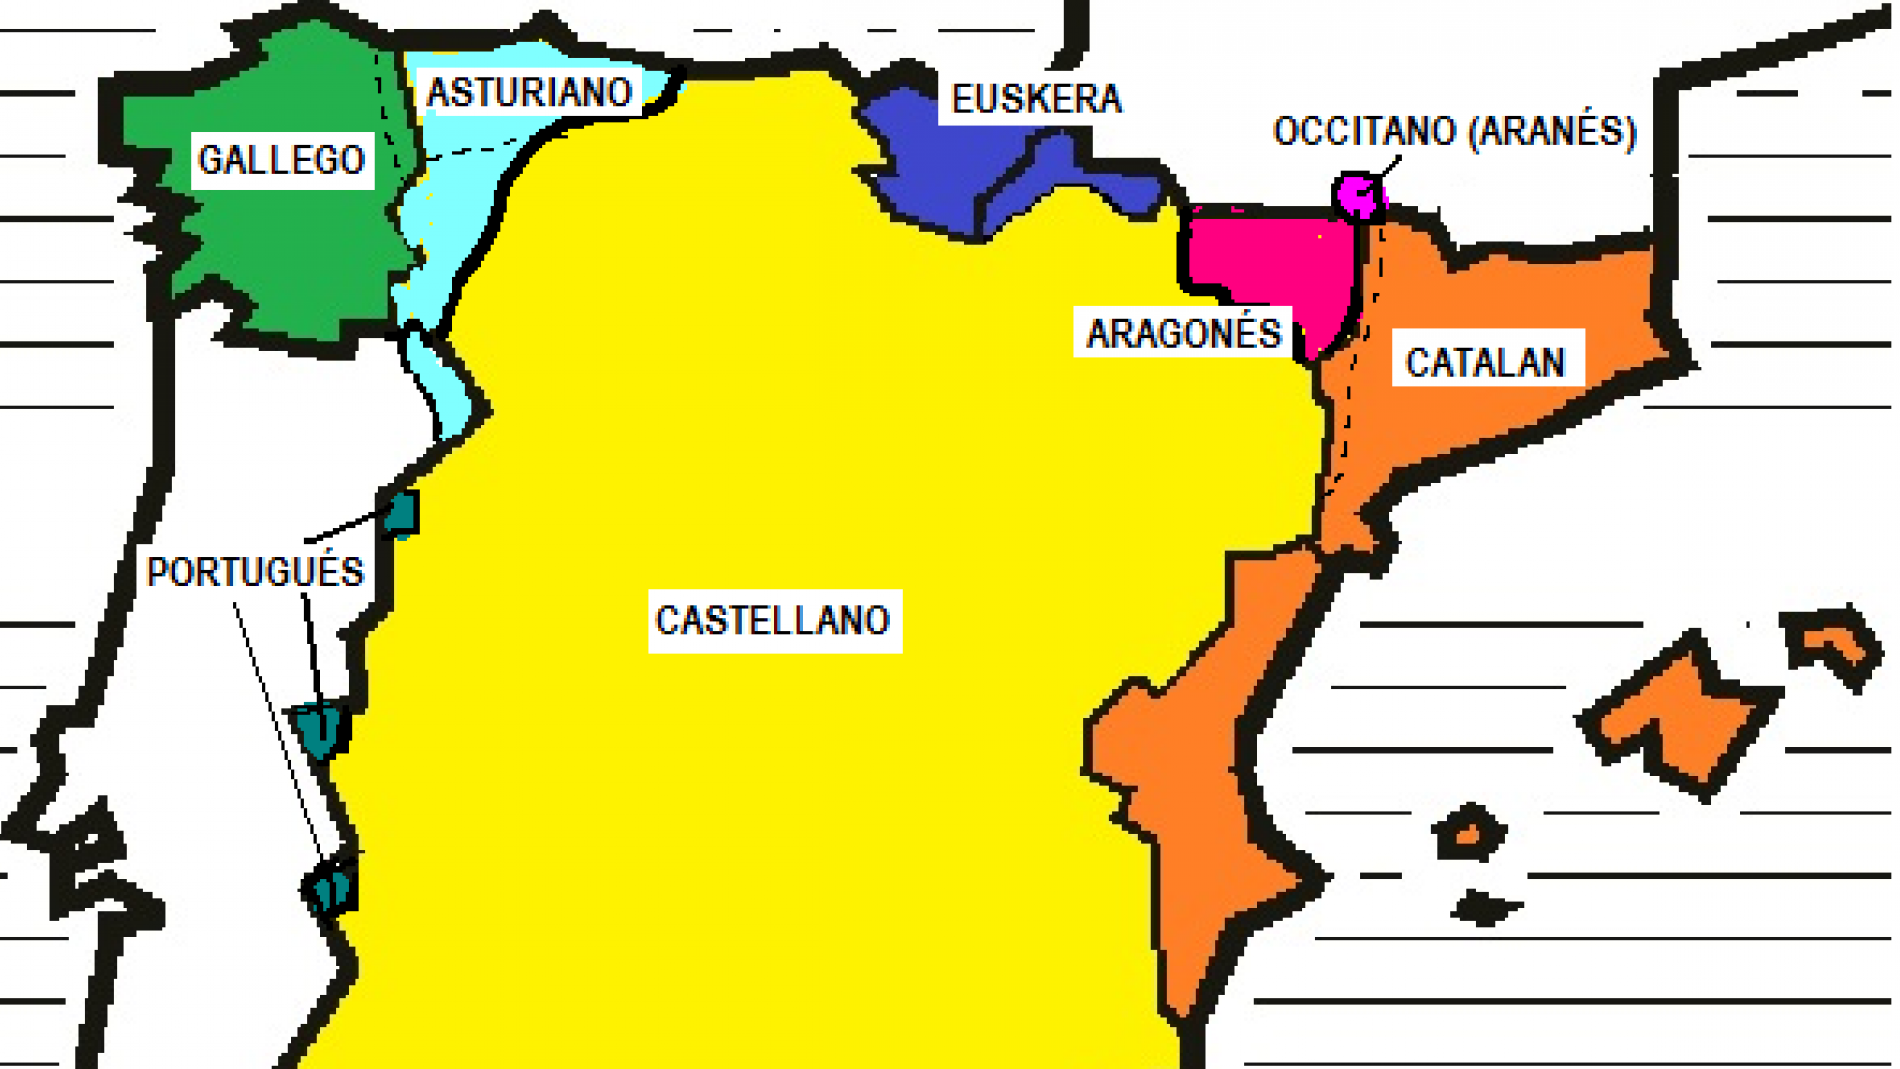 el catalan es otro idioma oficial de su país o que es?